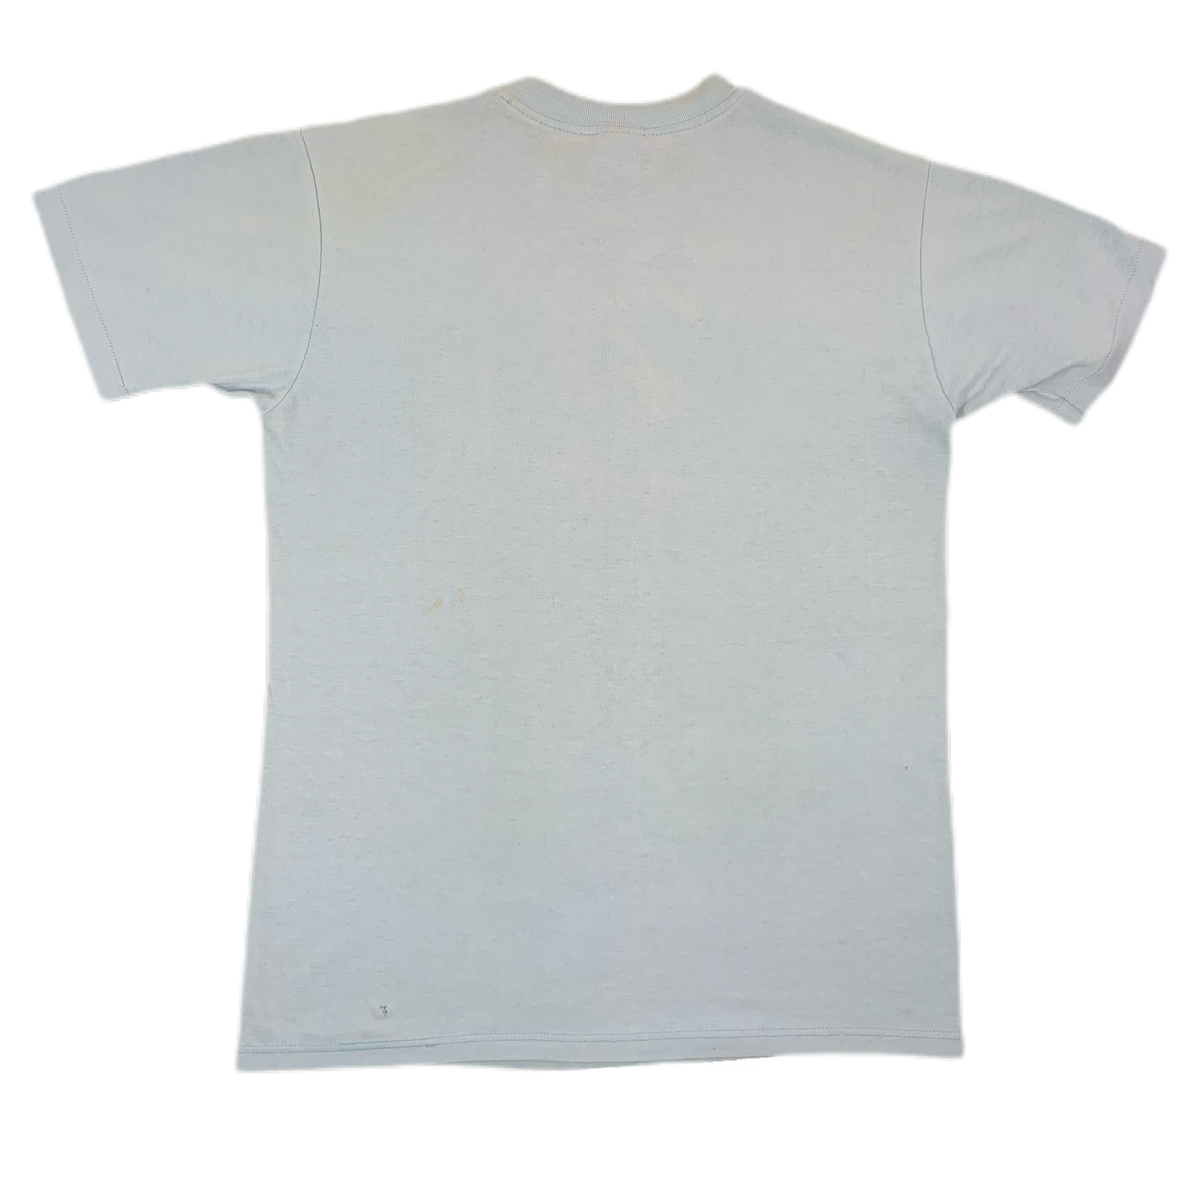 Vintage Sea World “1988” T-Shirt - jointcustodydc